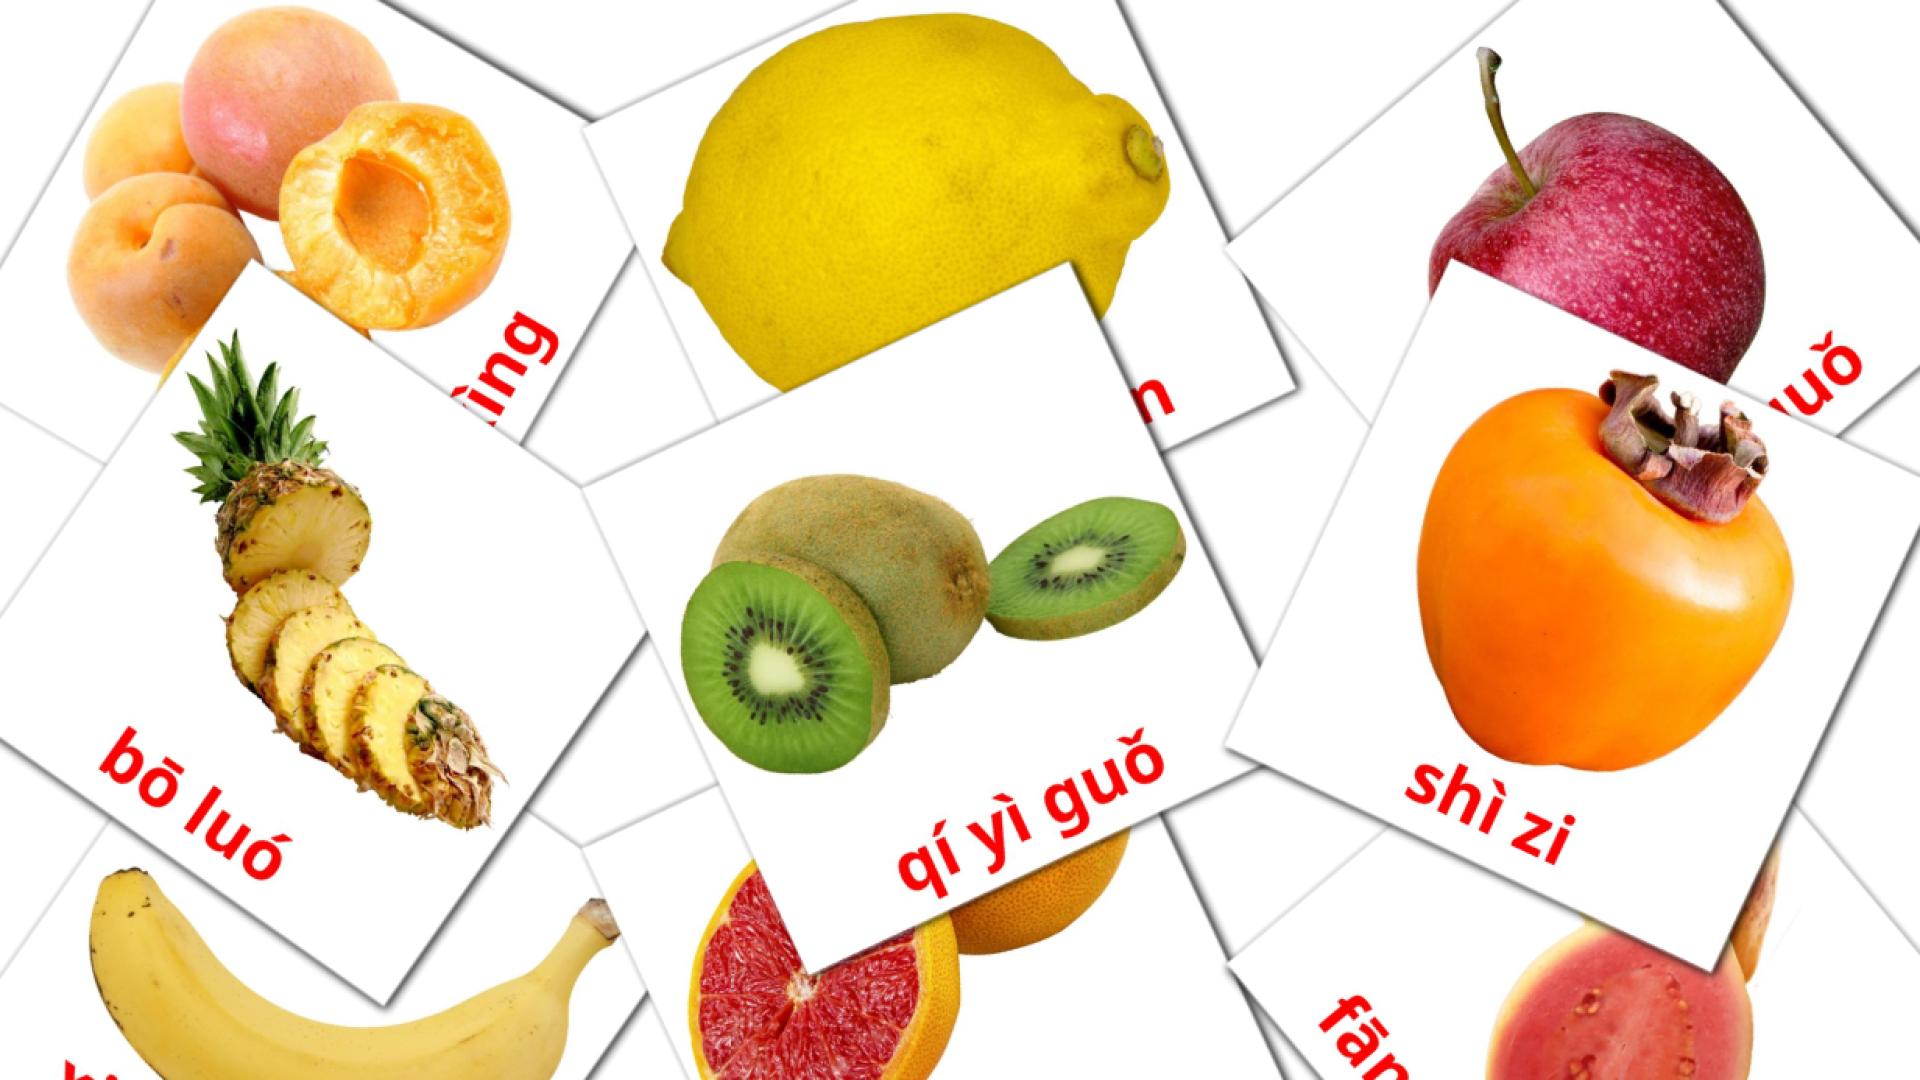 20 fruit flashcards